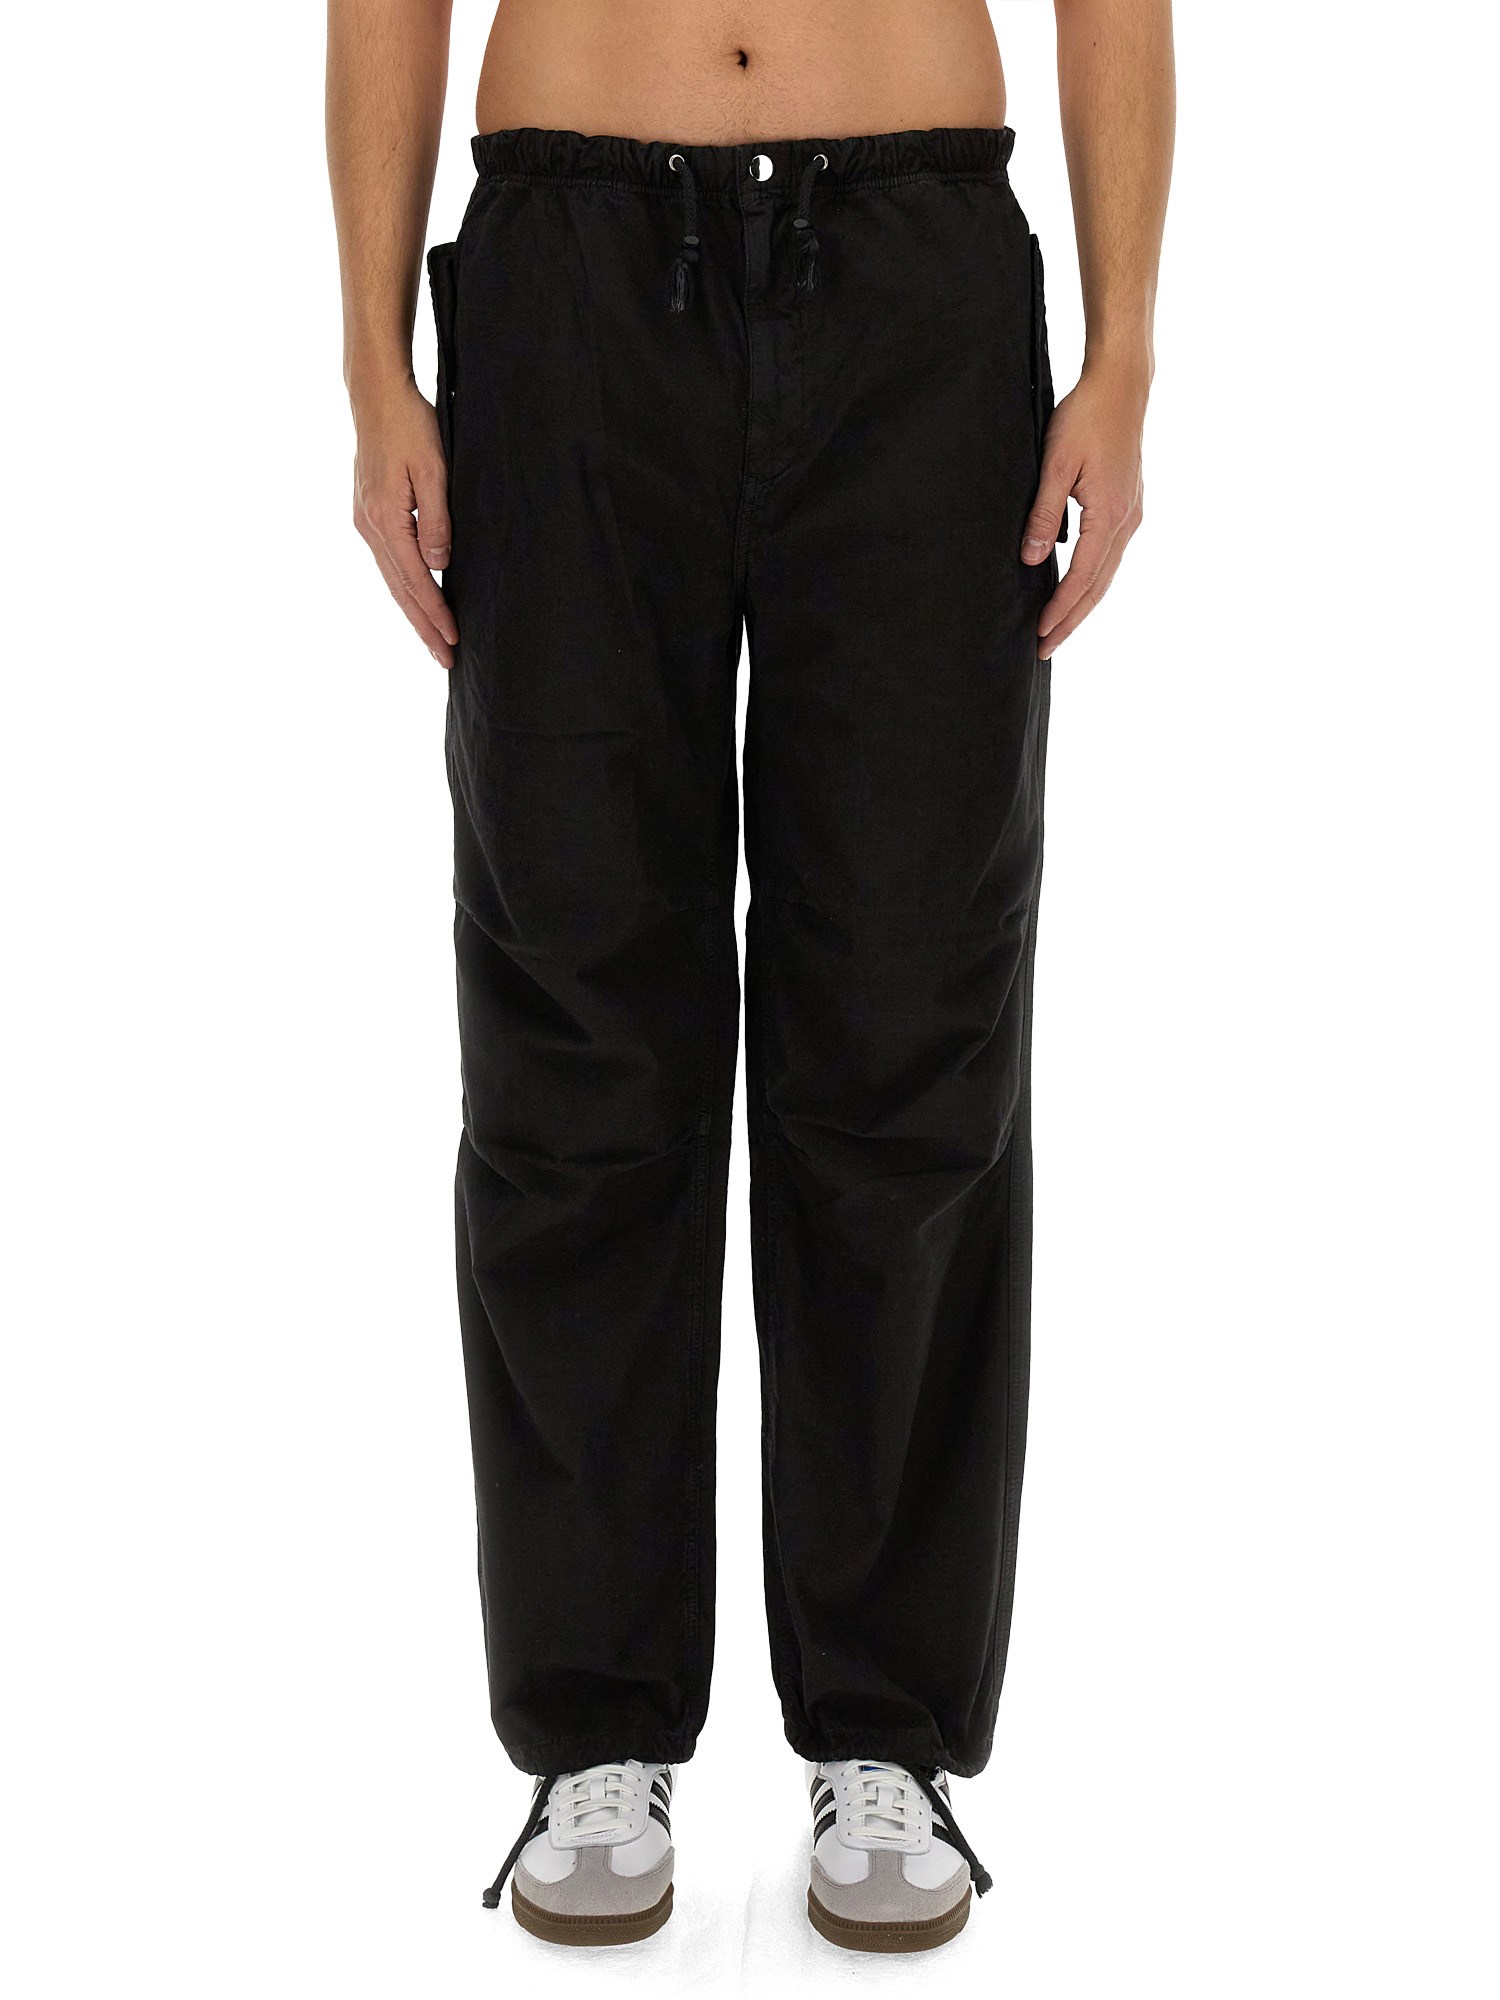 Shop Amish Parachute Pants In Black